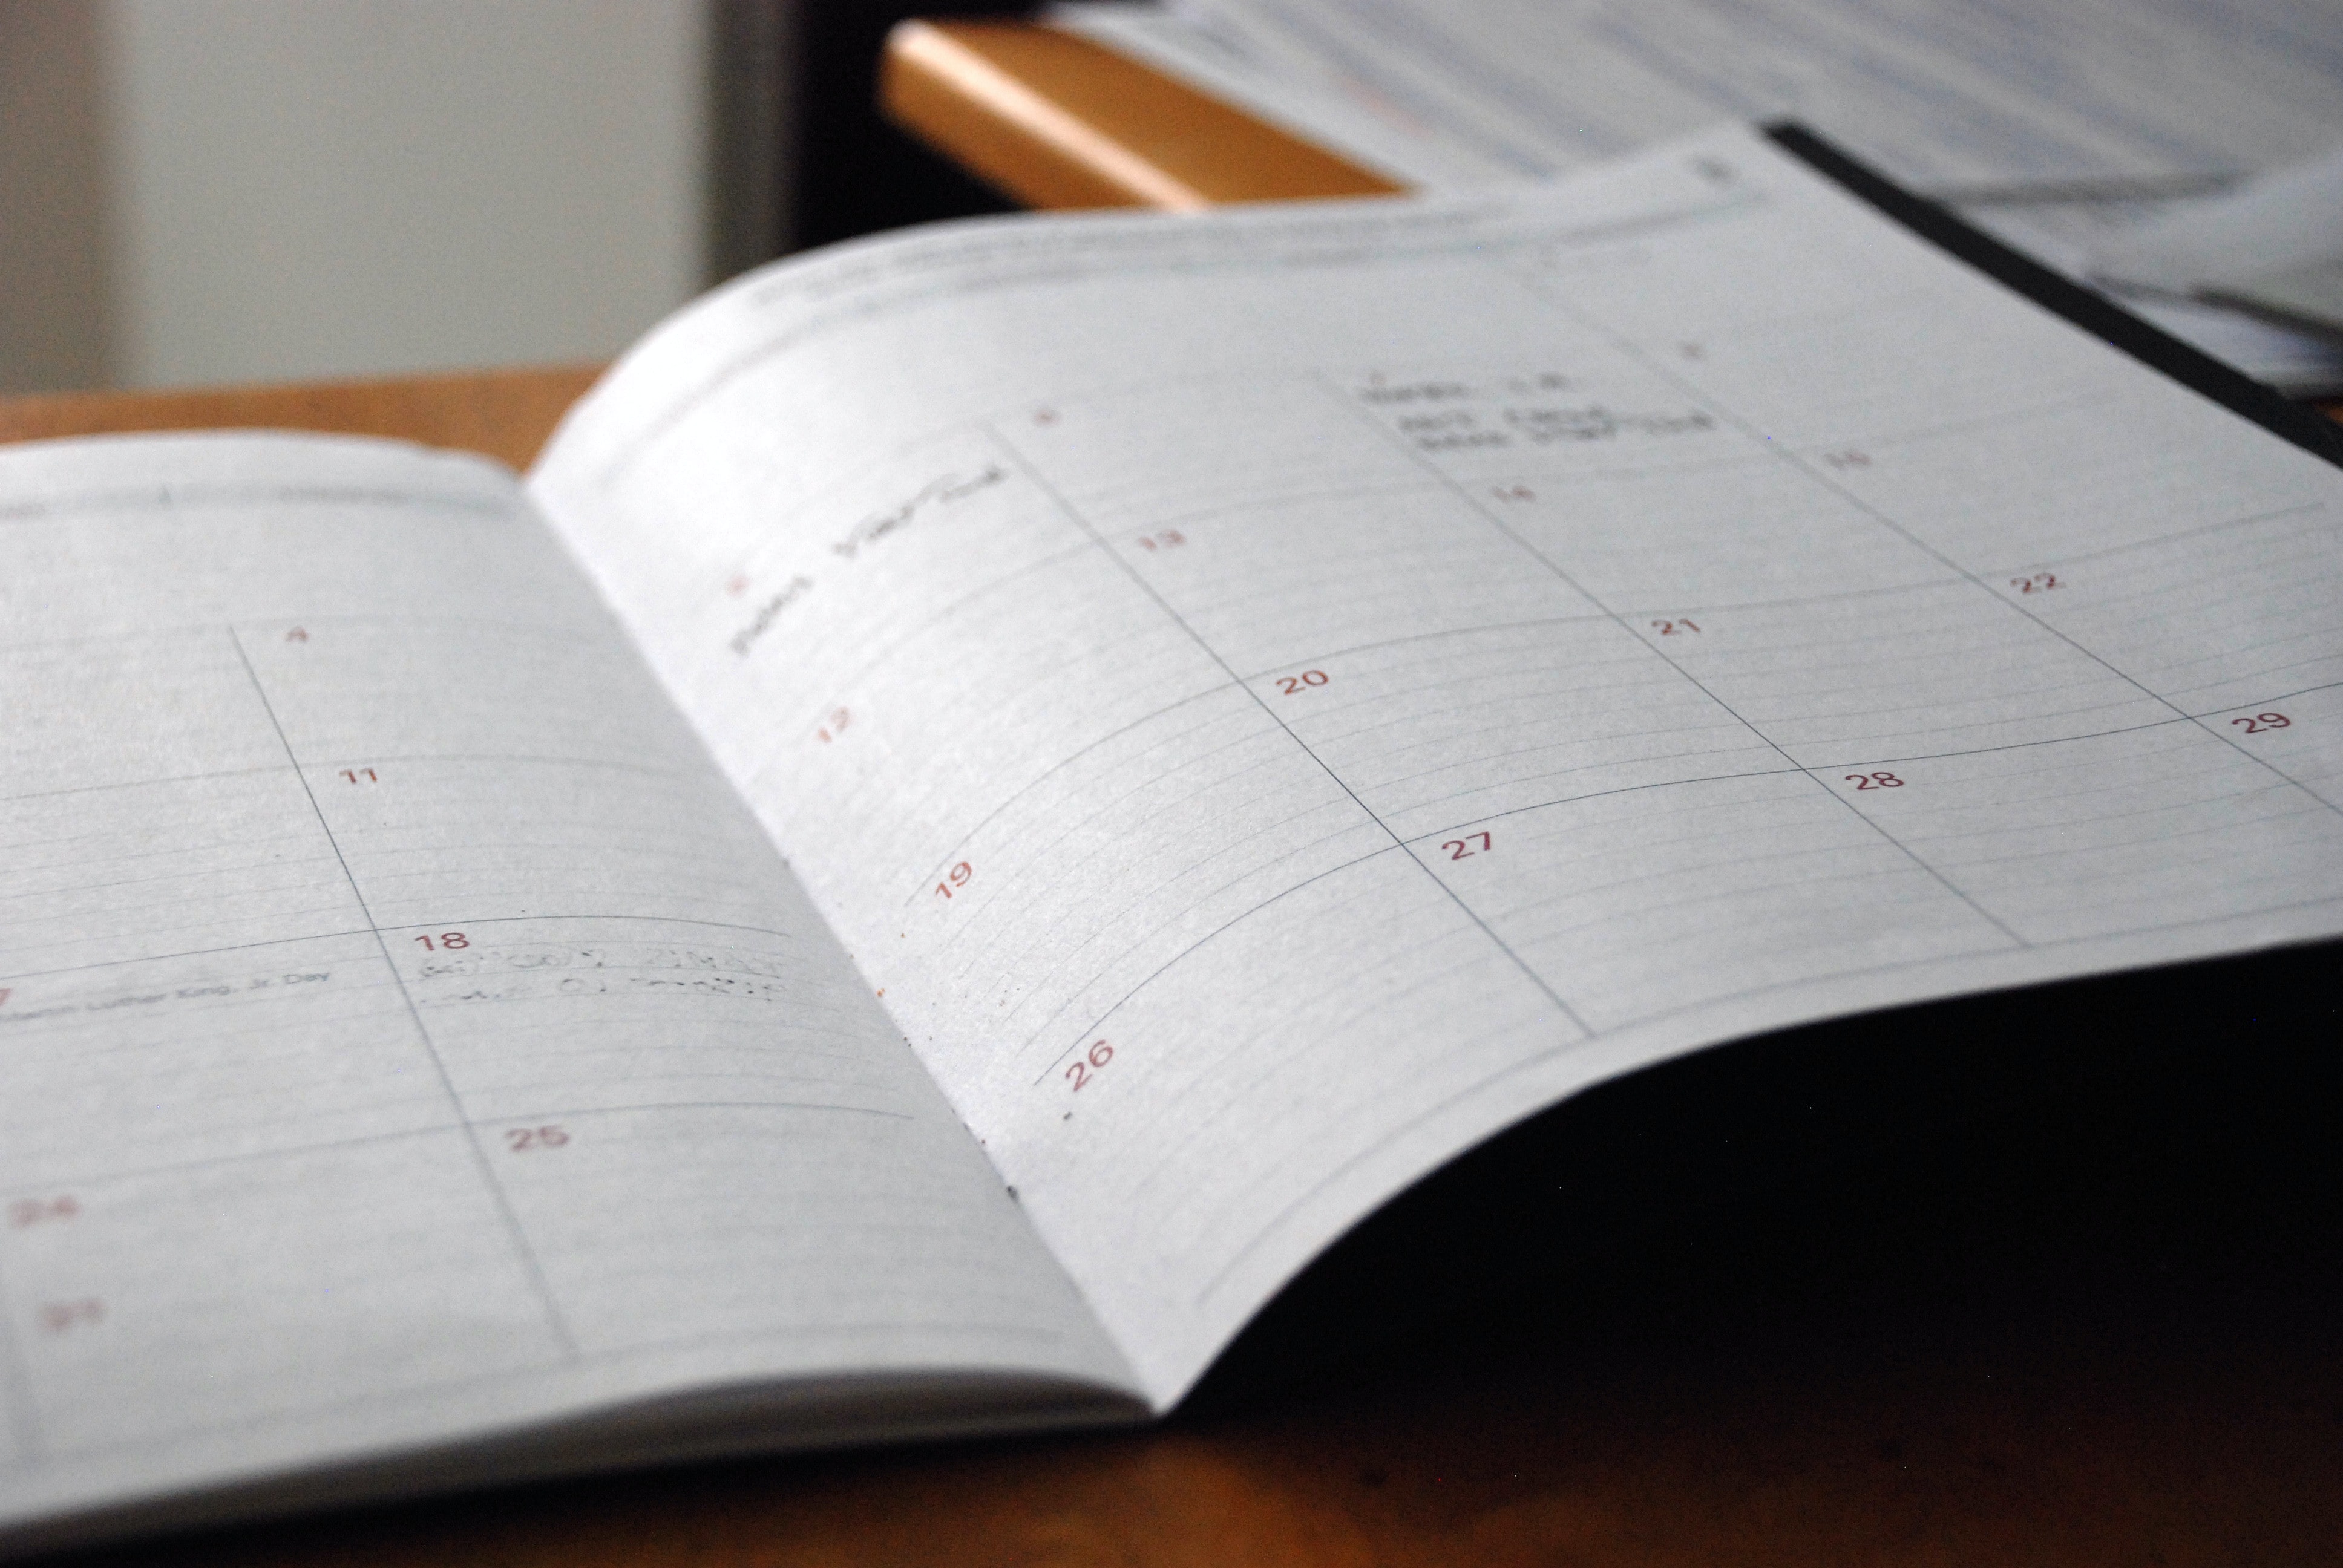 How to Build a Content Calendar